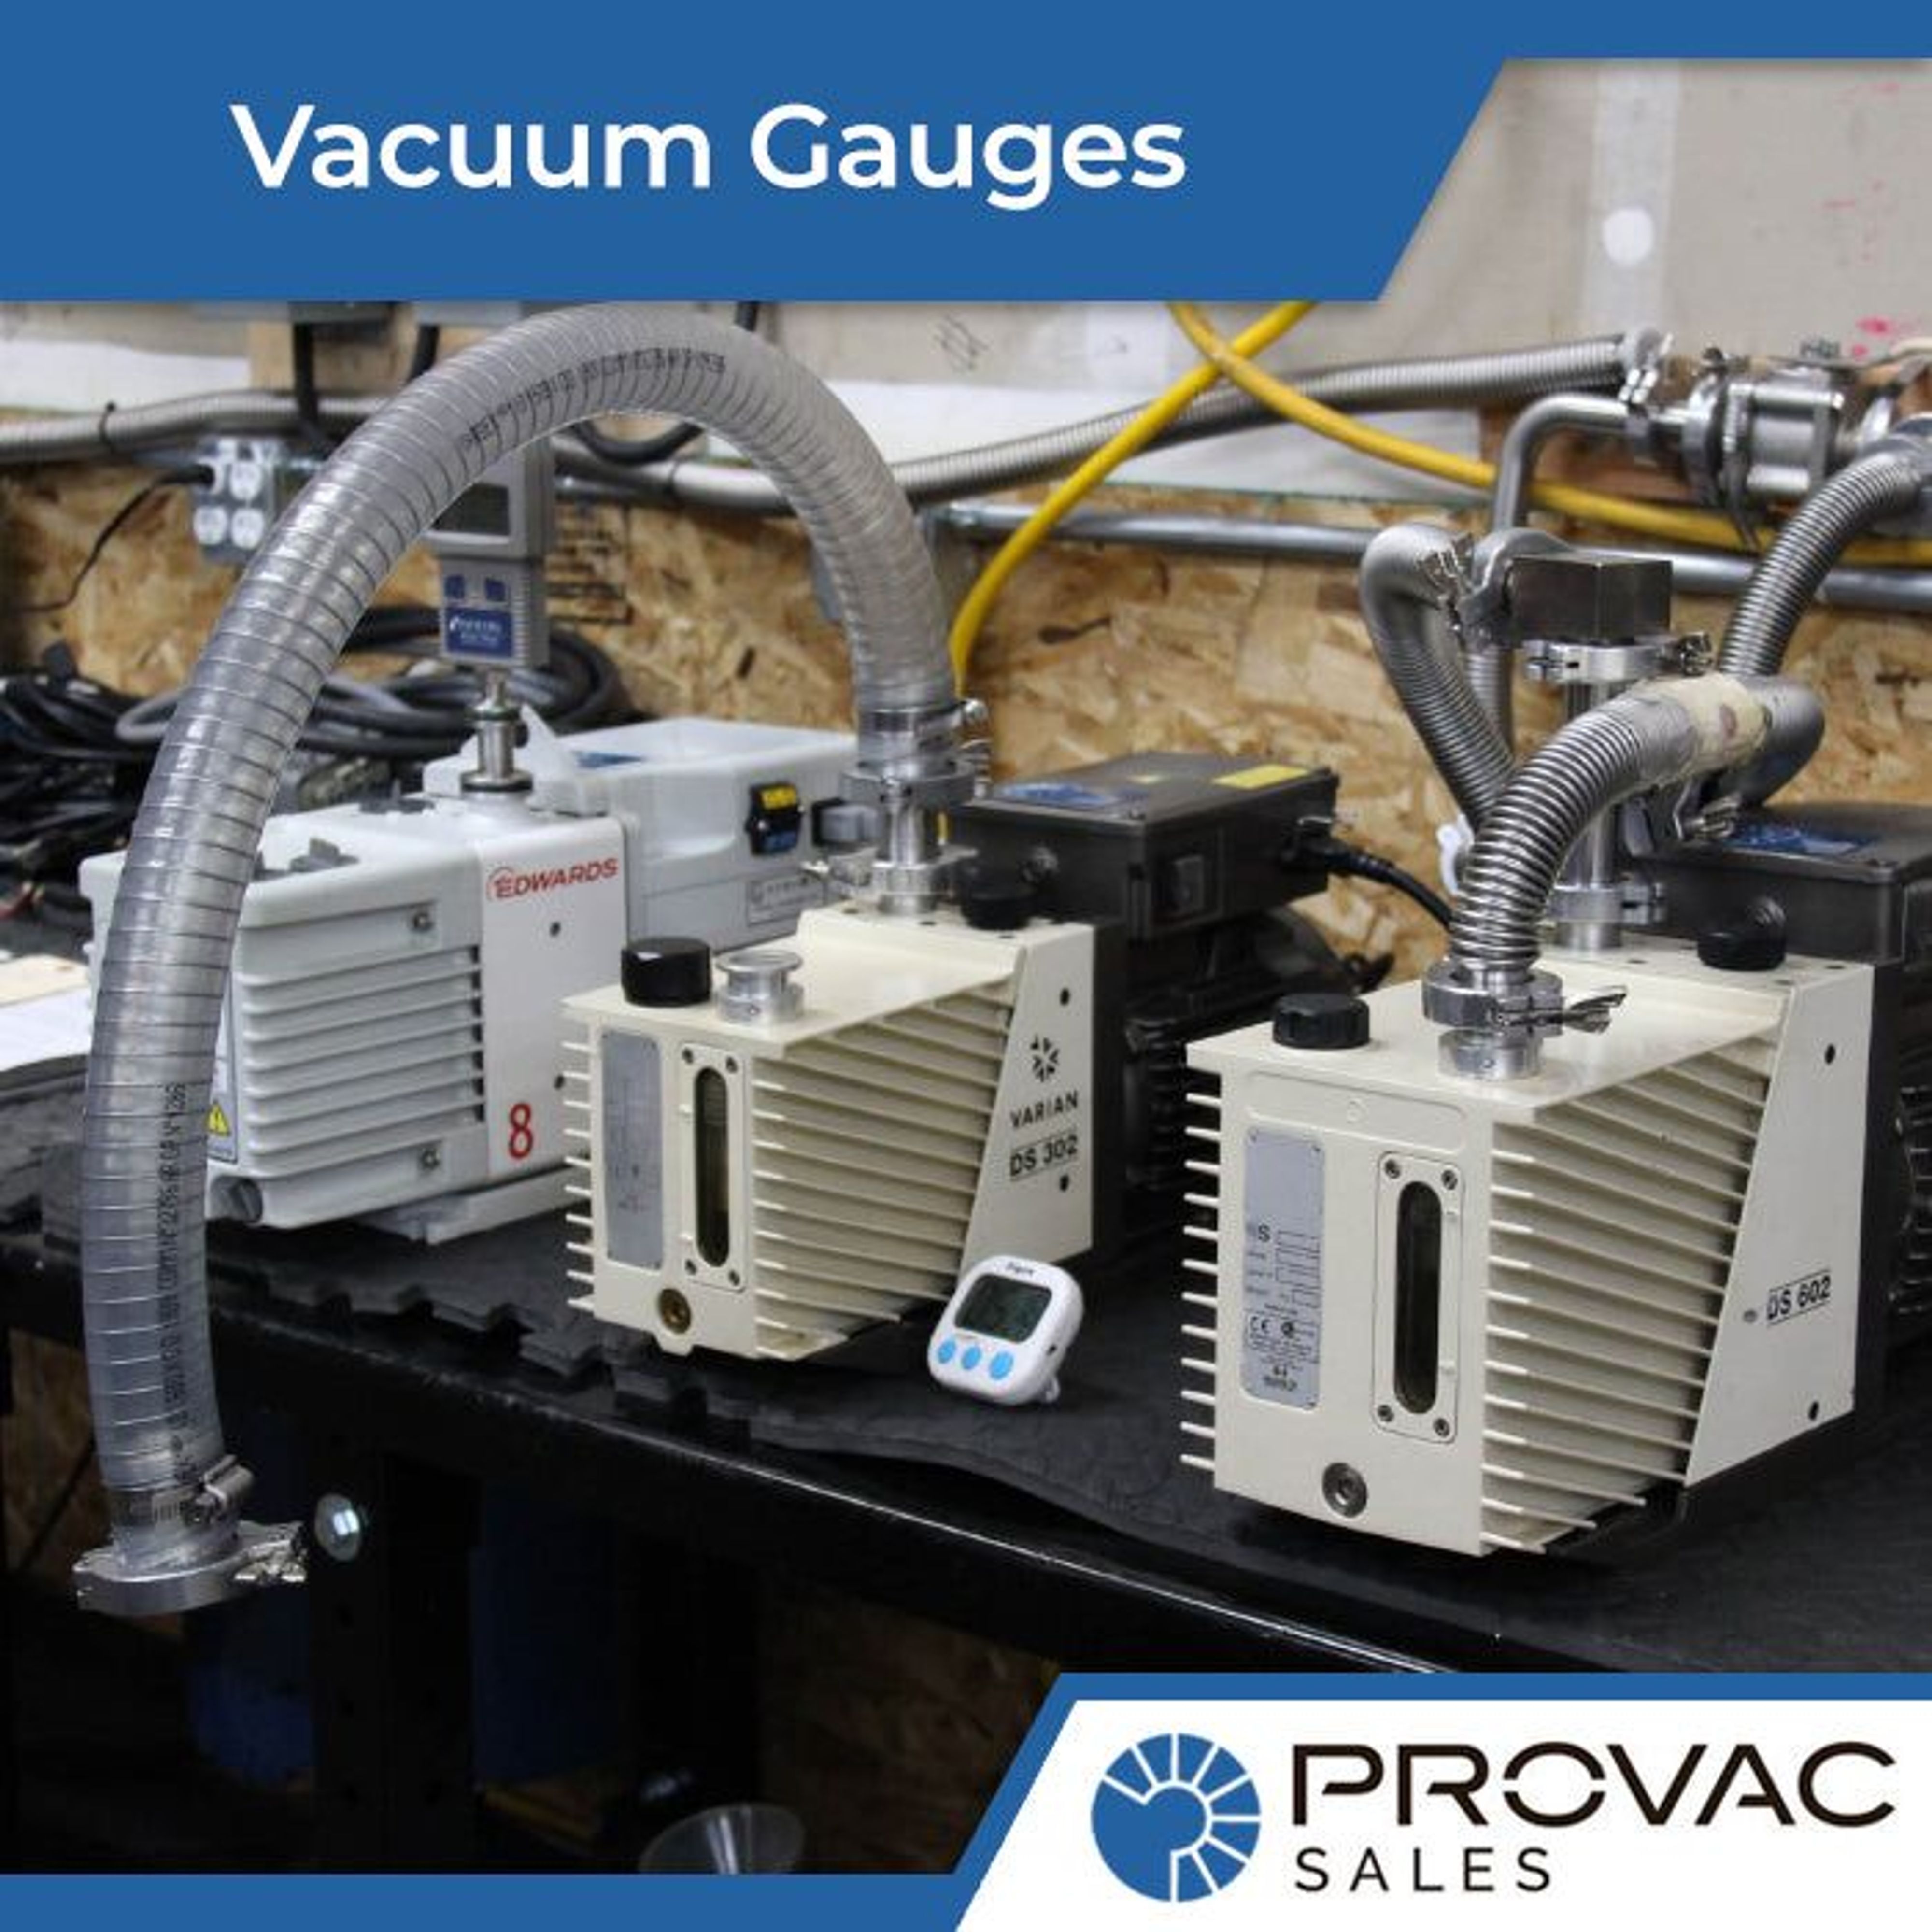 Vacuum Gauges Background